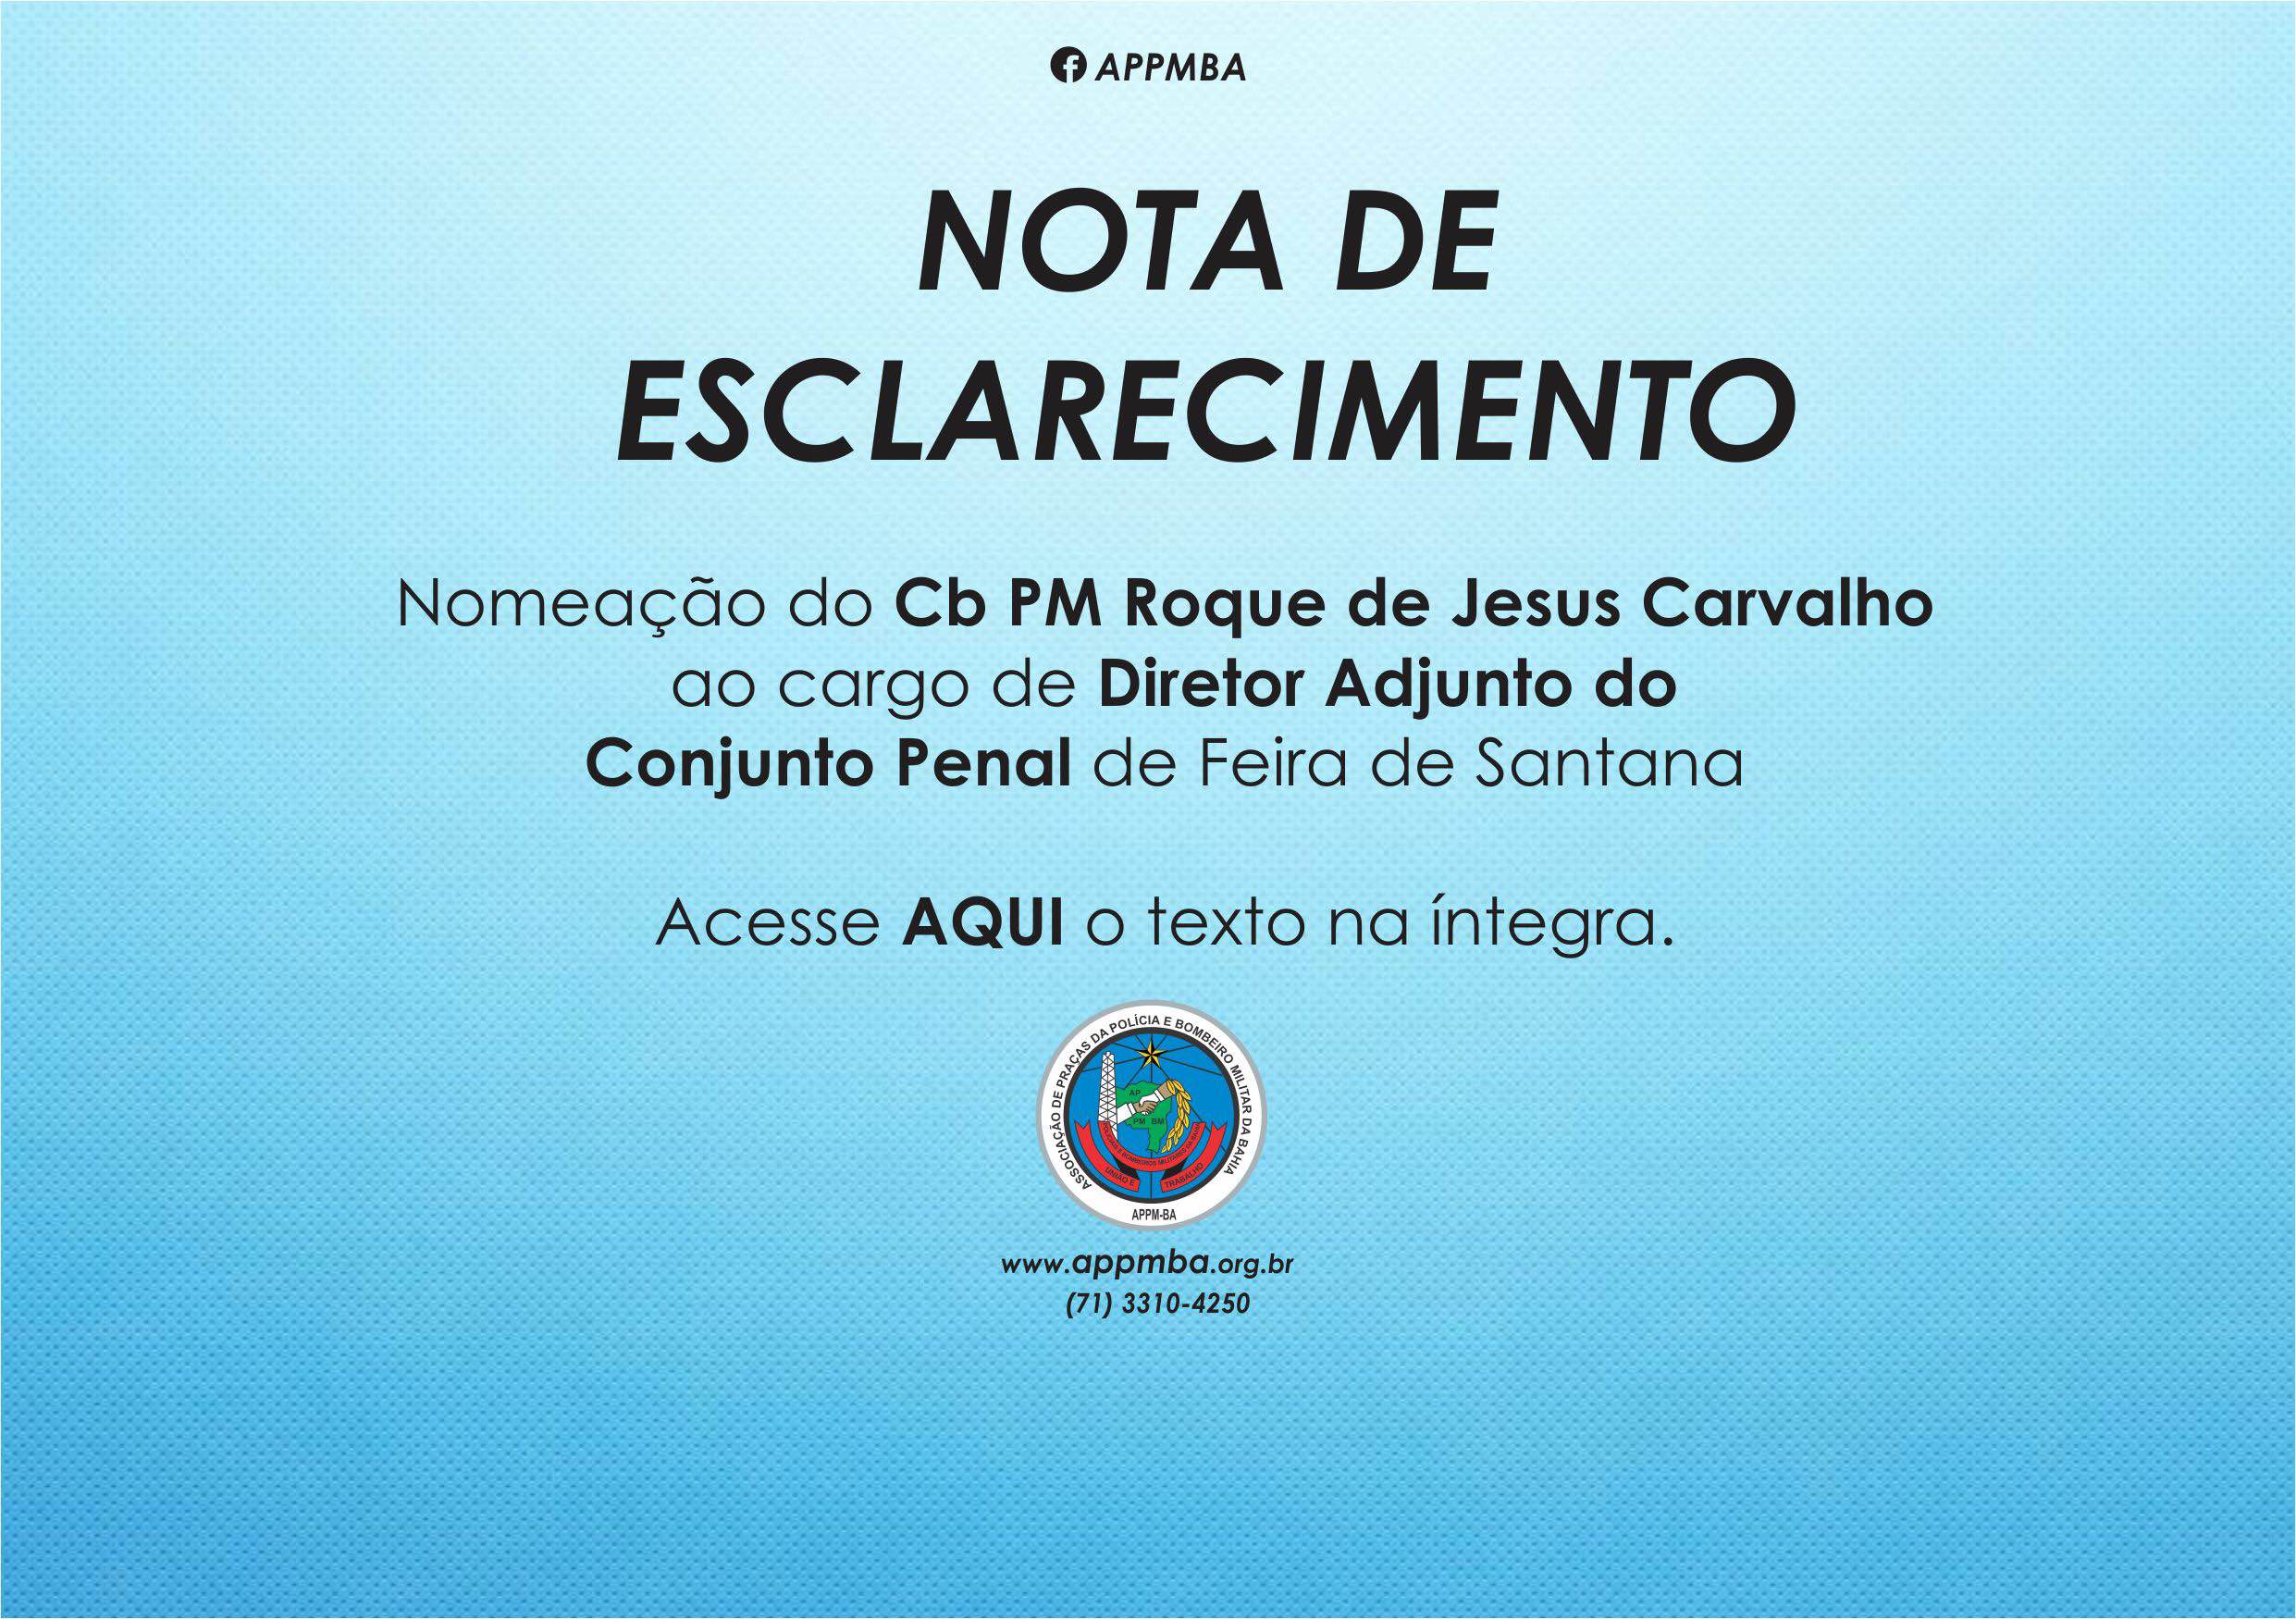 Nota de Esclarecimento - Nomeação CB PM Roque de Jesus Carvalho